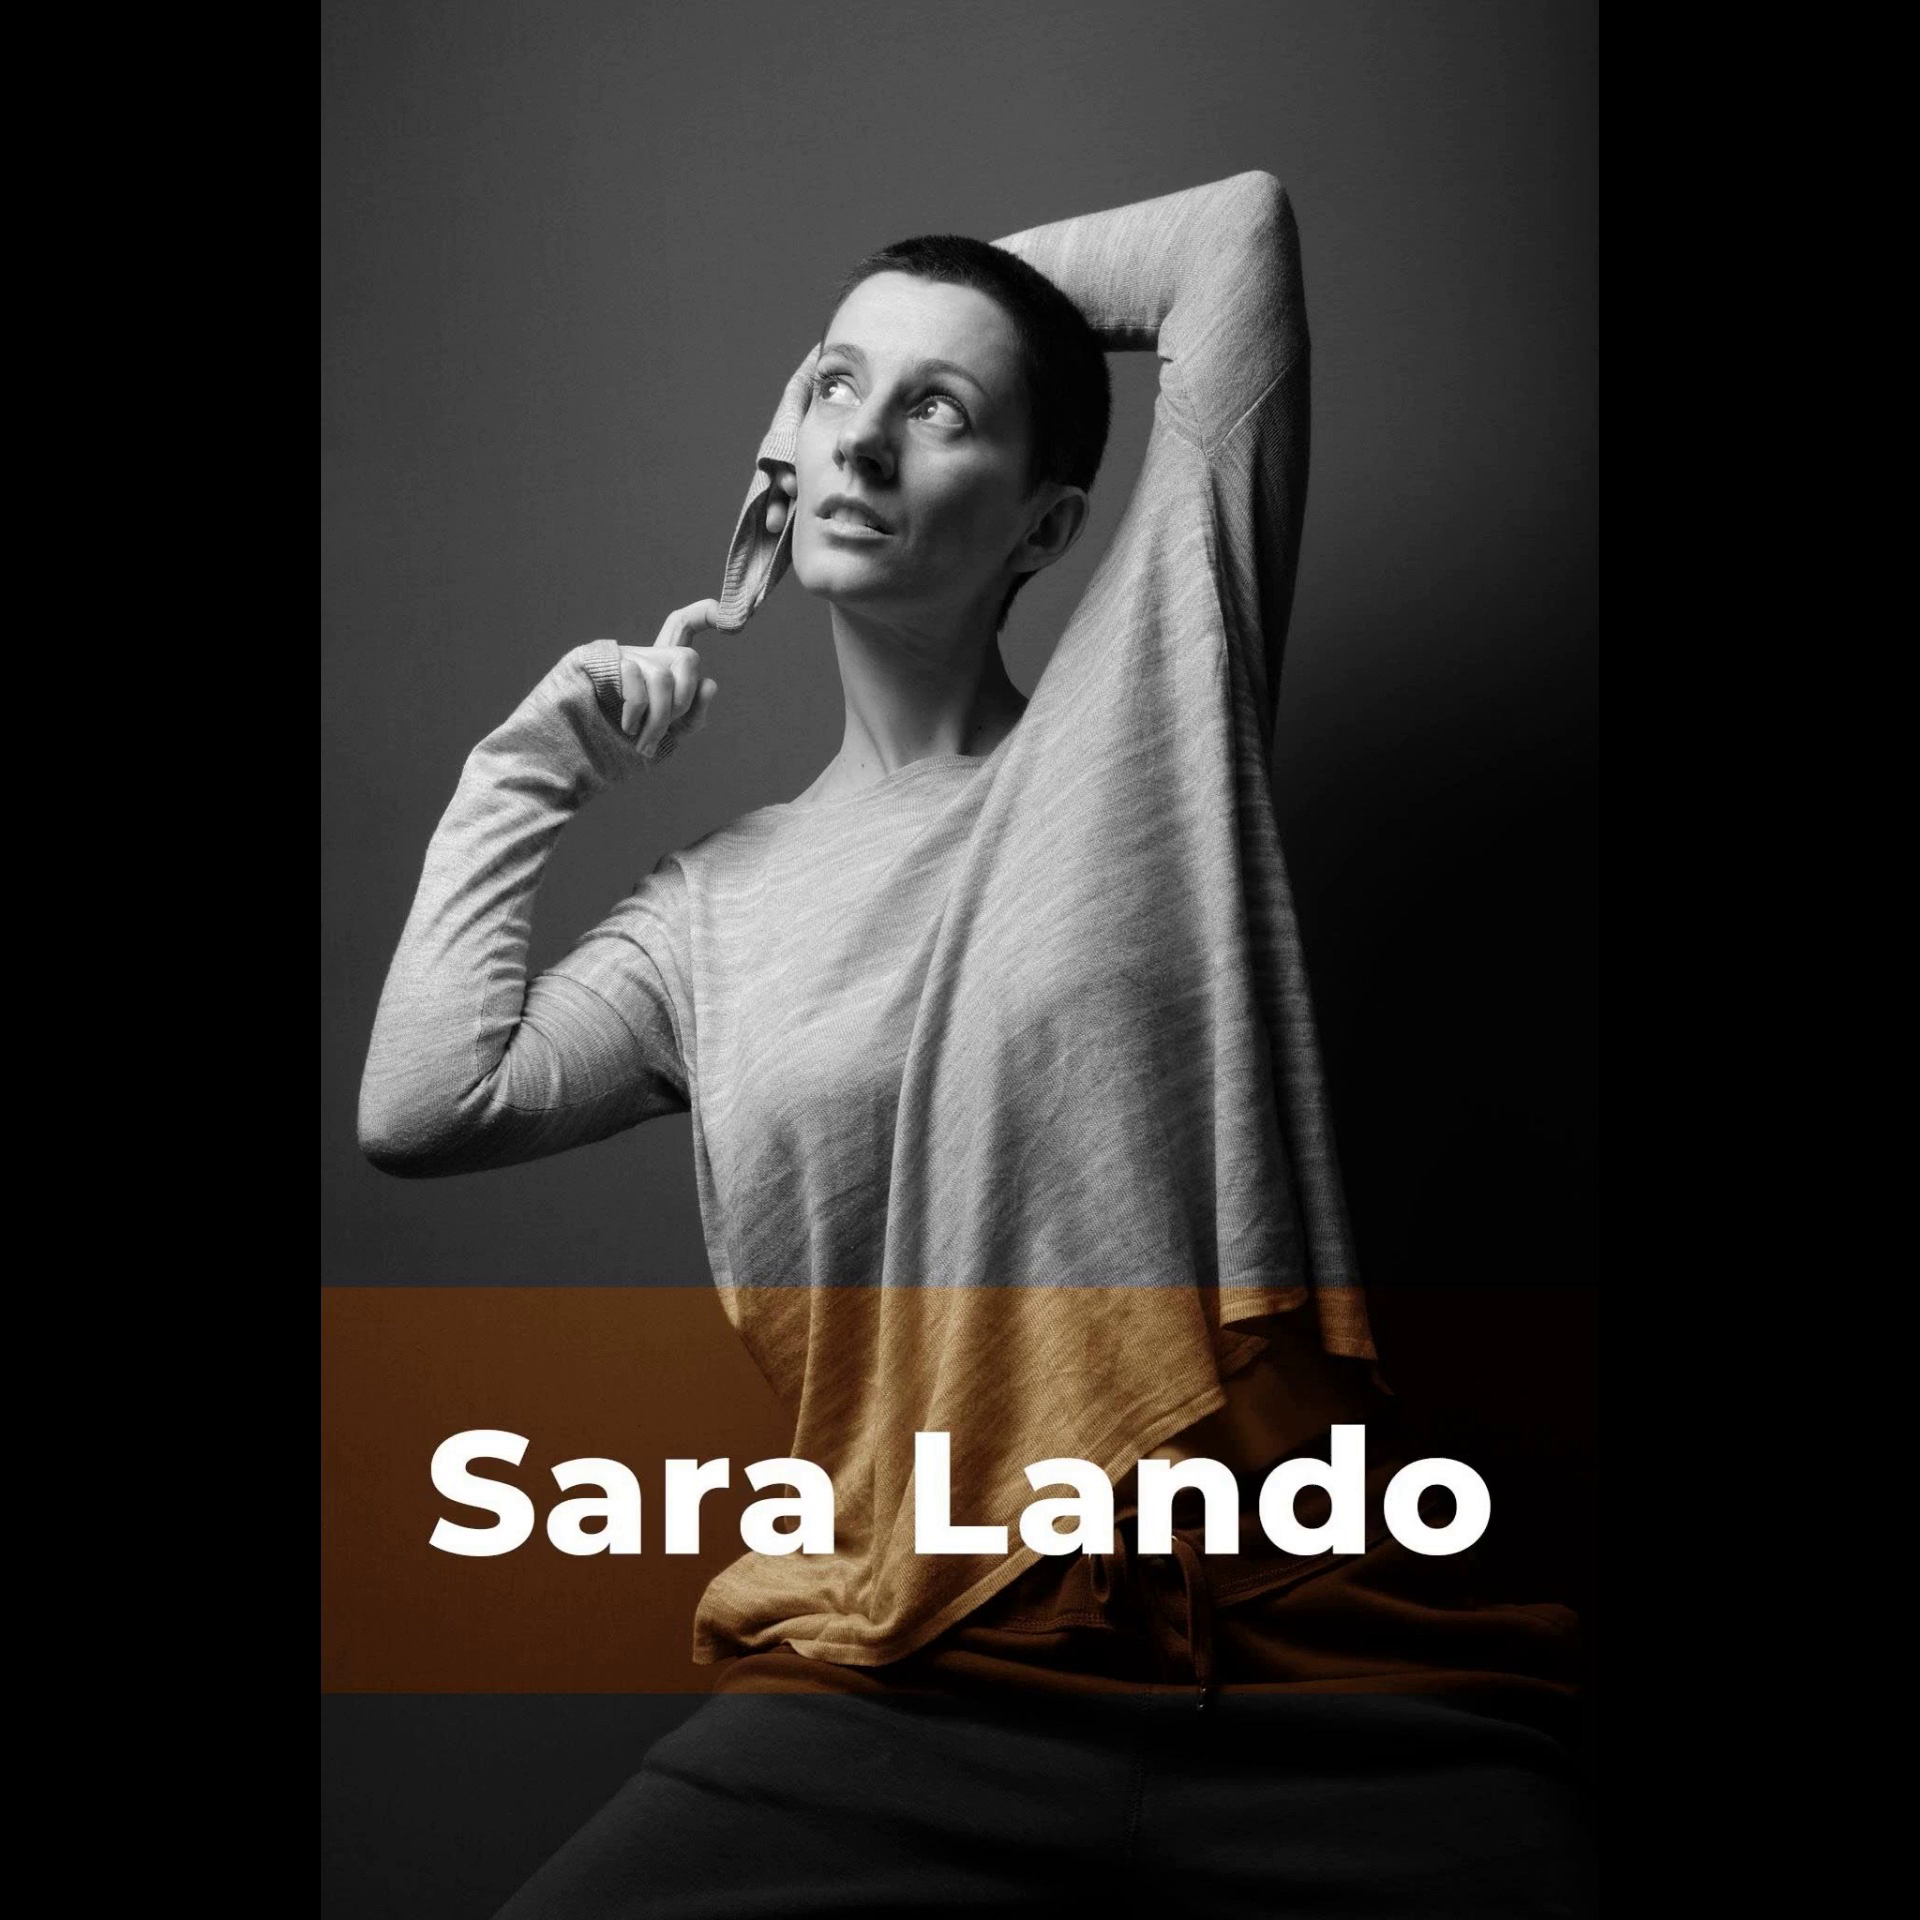 Sara Lando